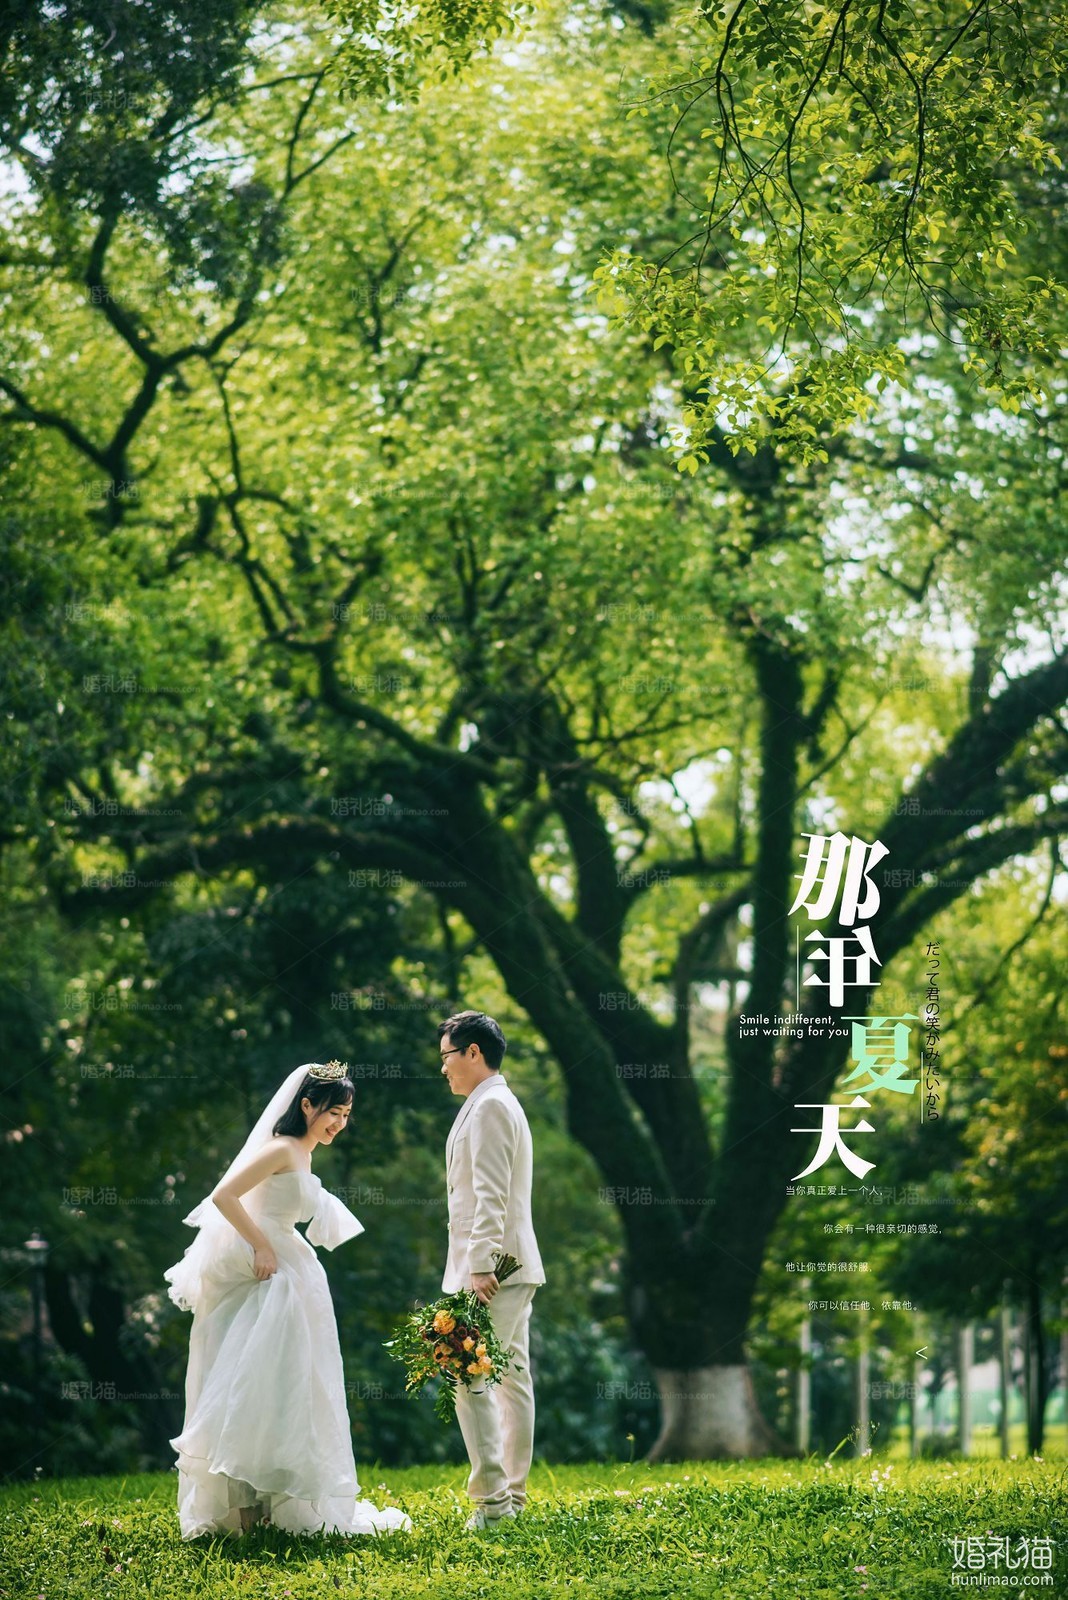 2019年7月广州婚纱照图片,,广州婚纱照,婚纱照图片